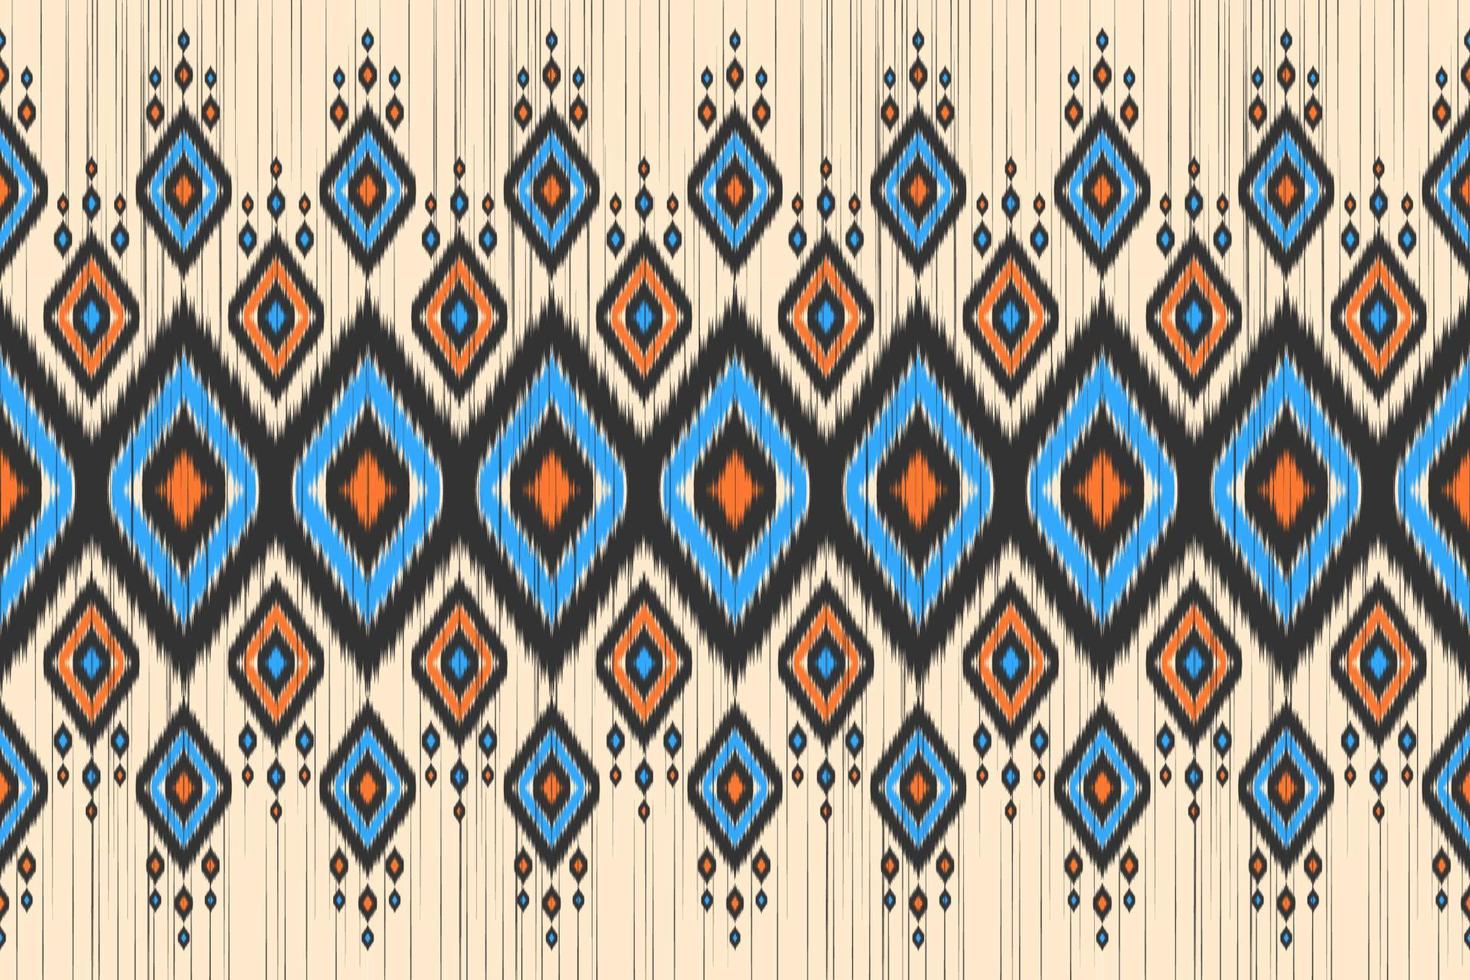 Teppich im mexikanischen Stil. ethnisches ikat-nahtloses muster im stammes-. Aztekischer geometrischer Ornamentdruck. vektor